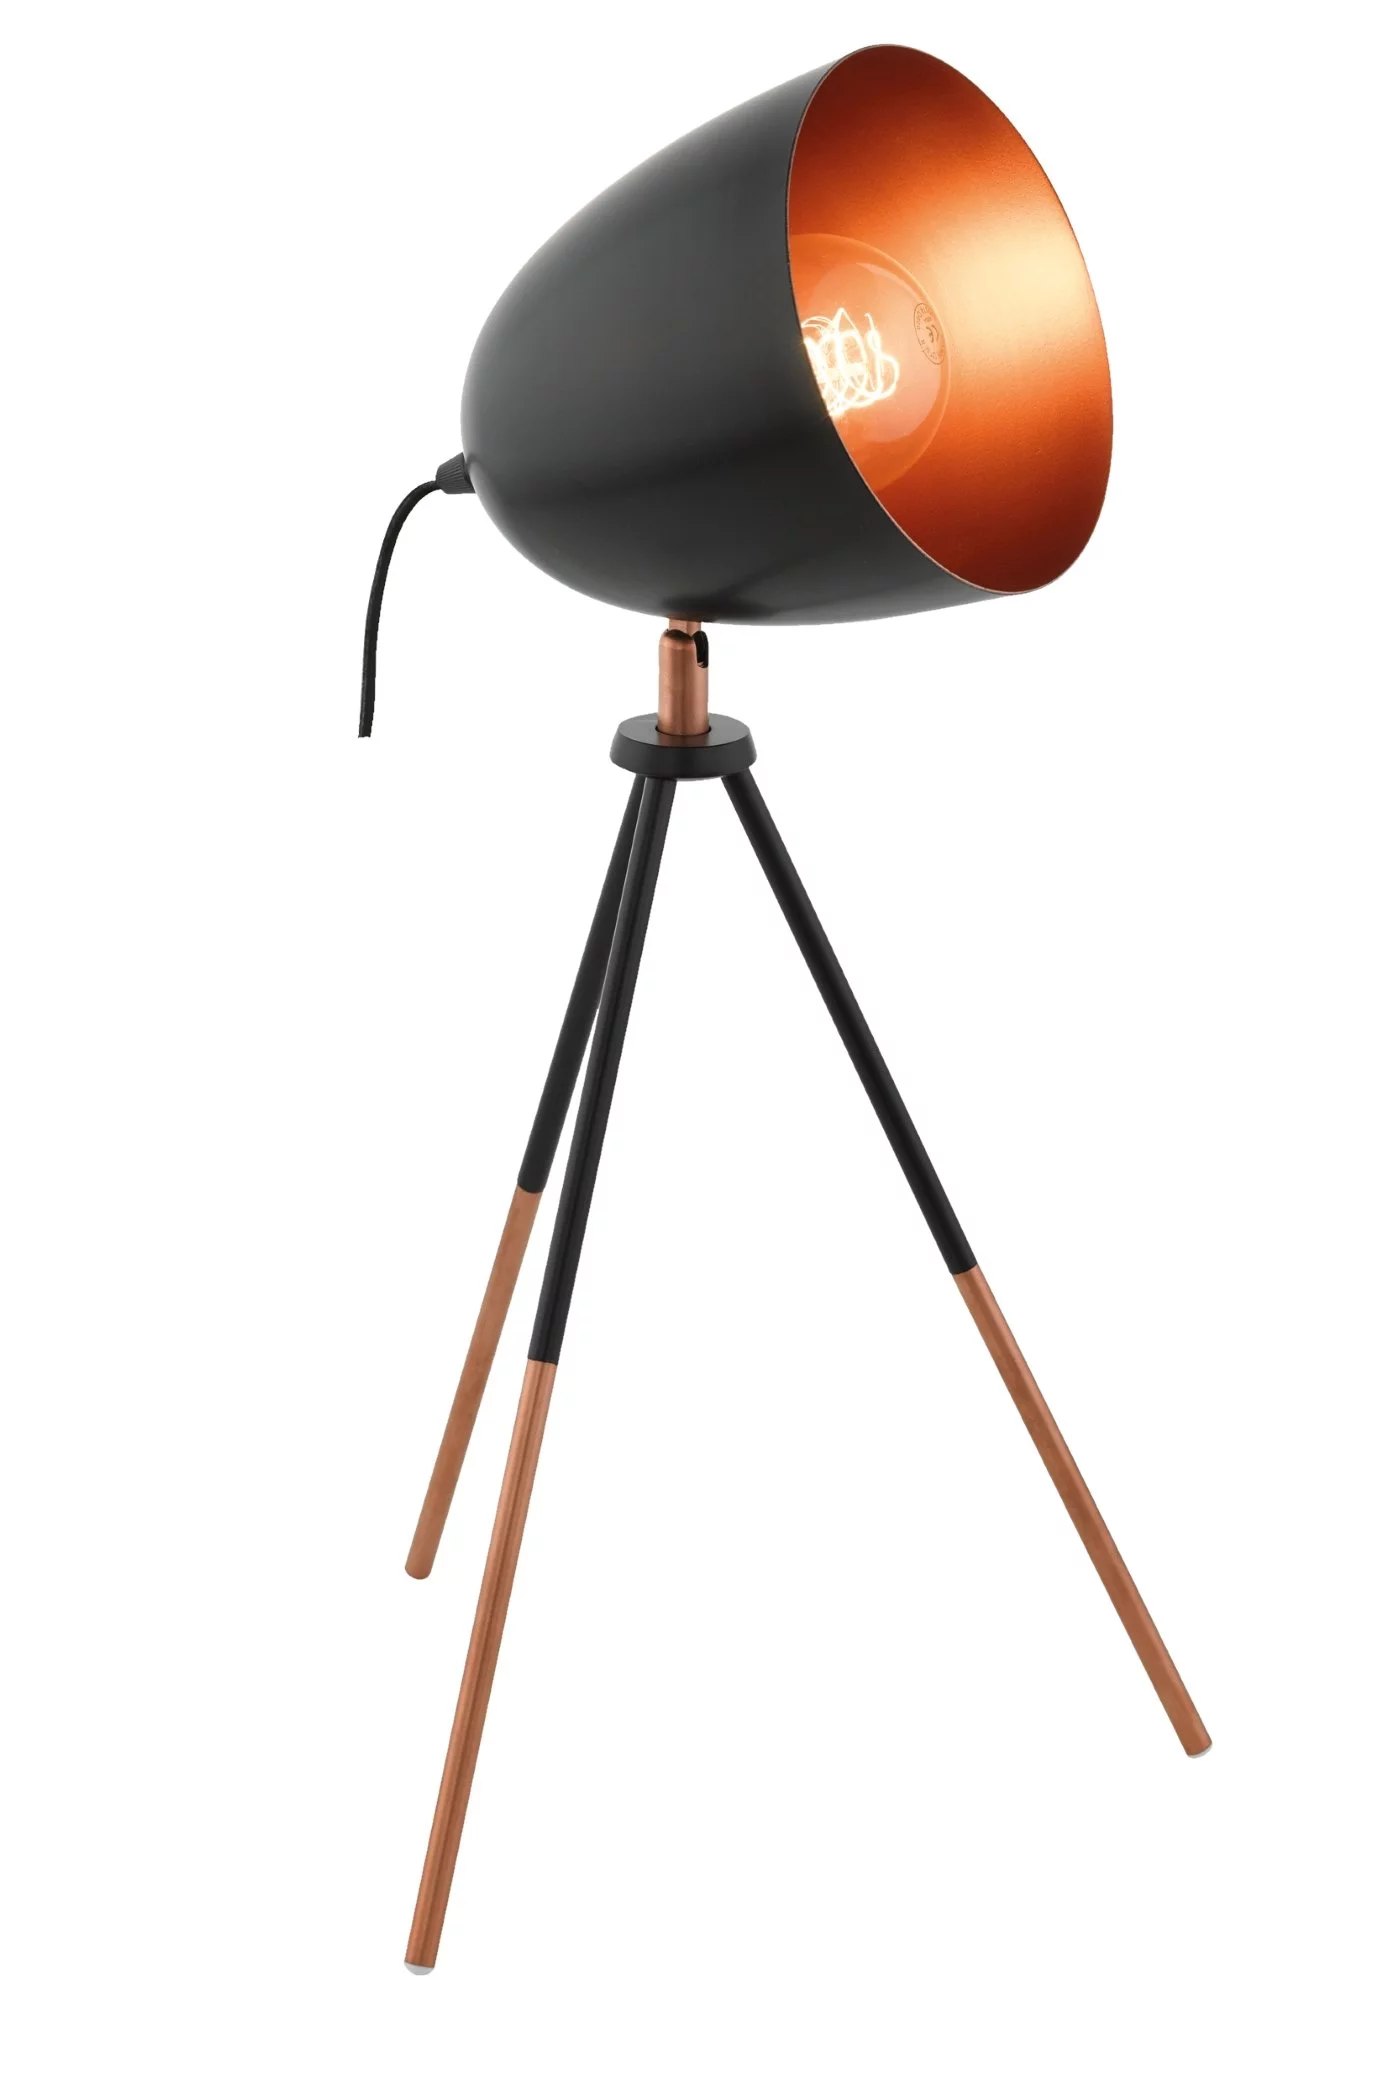   
                        Настільна лампа EGLO (Австрія) 89059    
                         у стилі лофт.  
                        Тип джерела світла: cвітлодіодні led, енергозберігаючі, розжарювання.                                                 Кольори плафонів і підвісок: чорний, мідь.                         Матеріал: сталь.                          фото 1